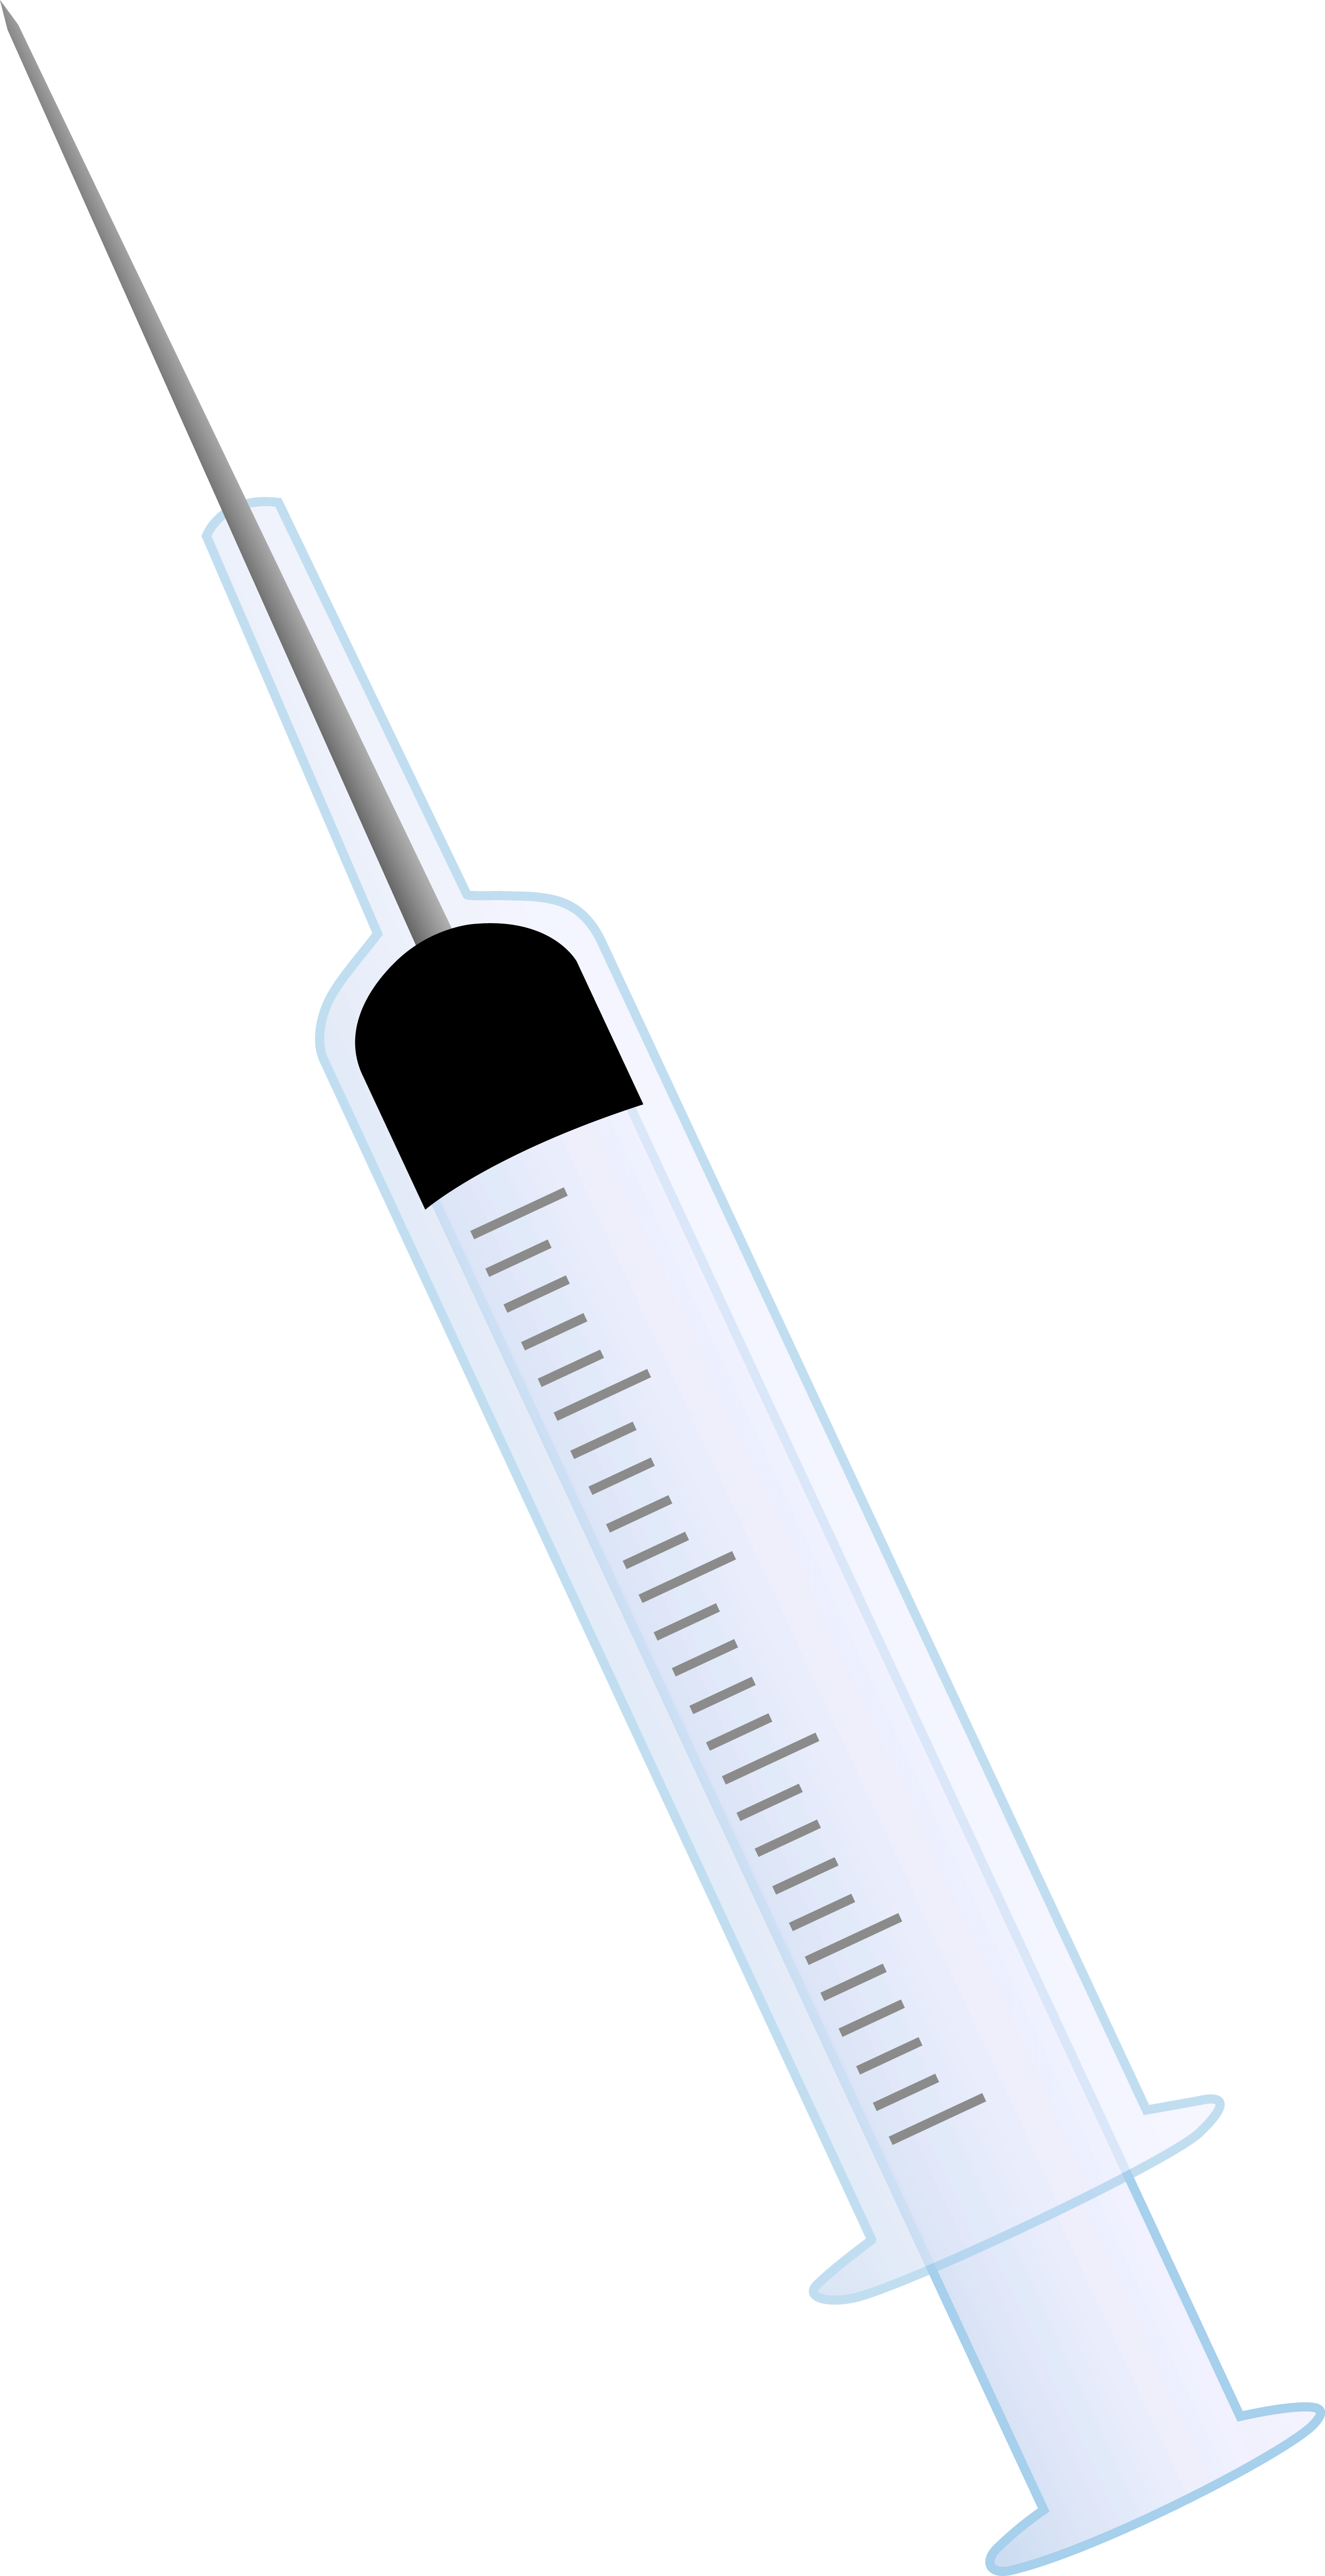 Medical Syringe Png Clipart Best Web Clipart Clip Art Medical | Images ...